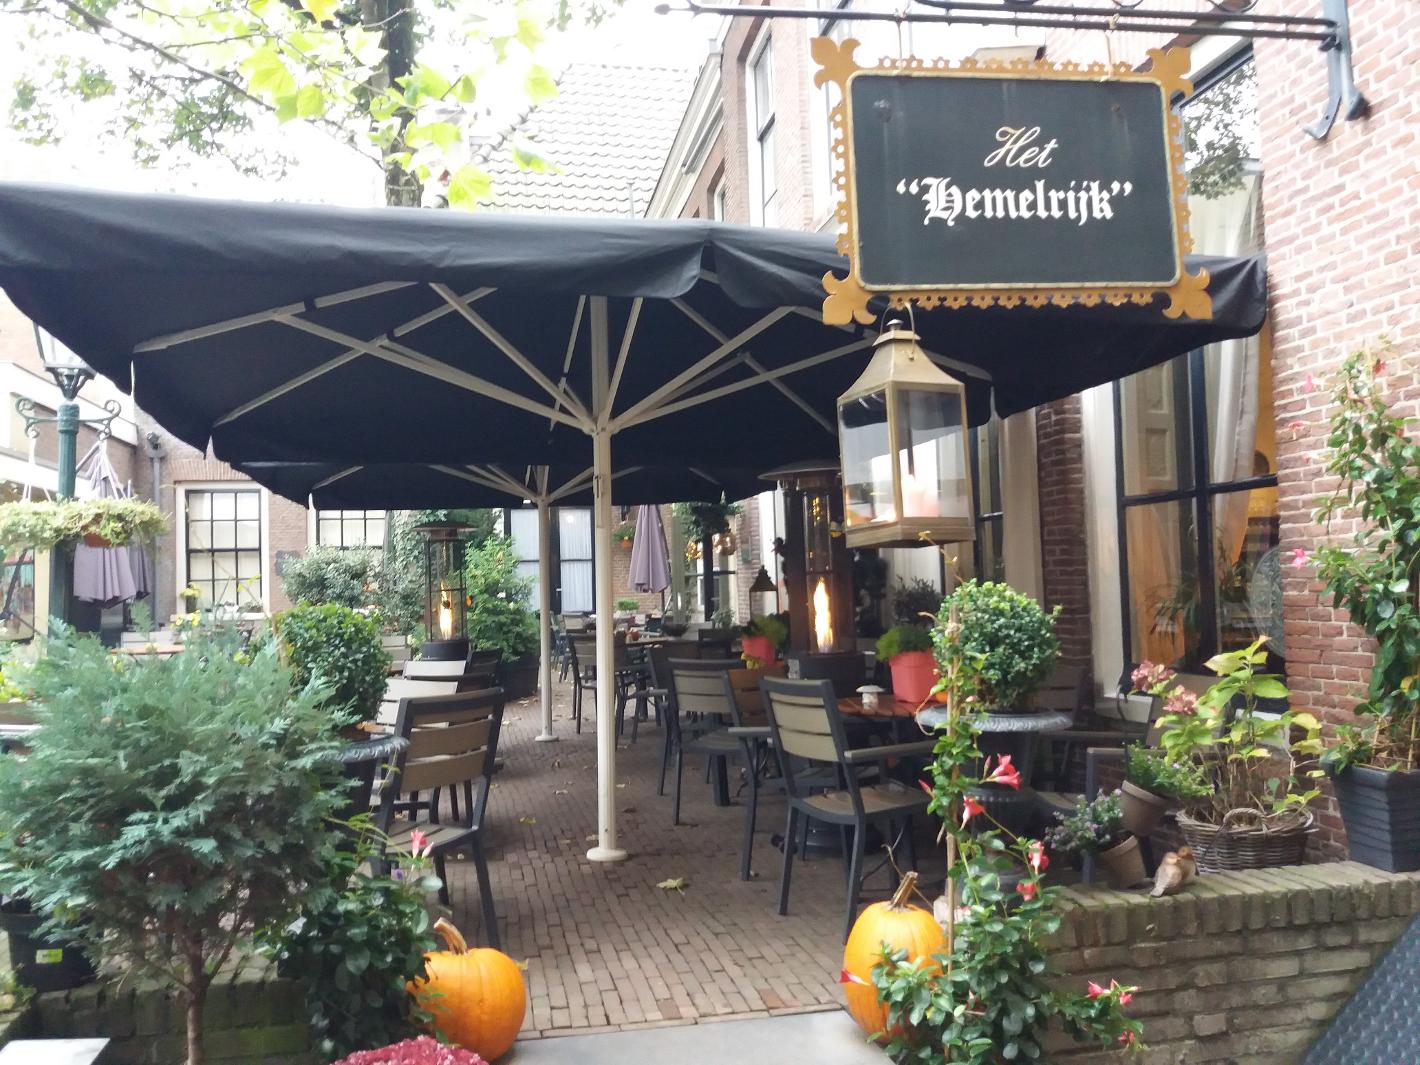 Foto Koffiehuis het Hemelrijk in Arnhem, Eten & drinken, Koffie thee drinken, Genieten van lunch - #4